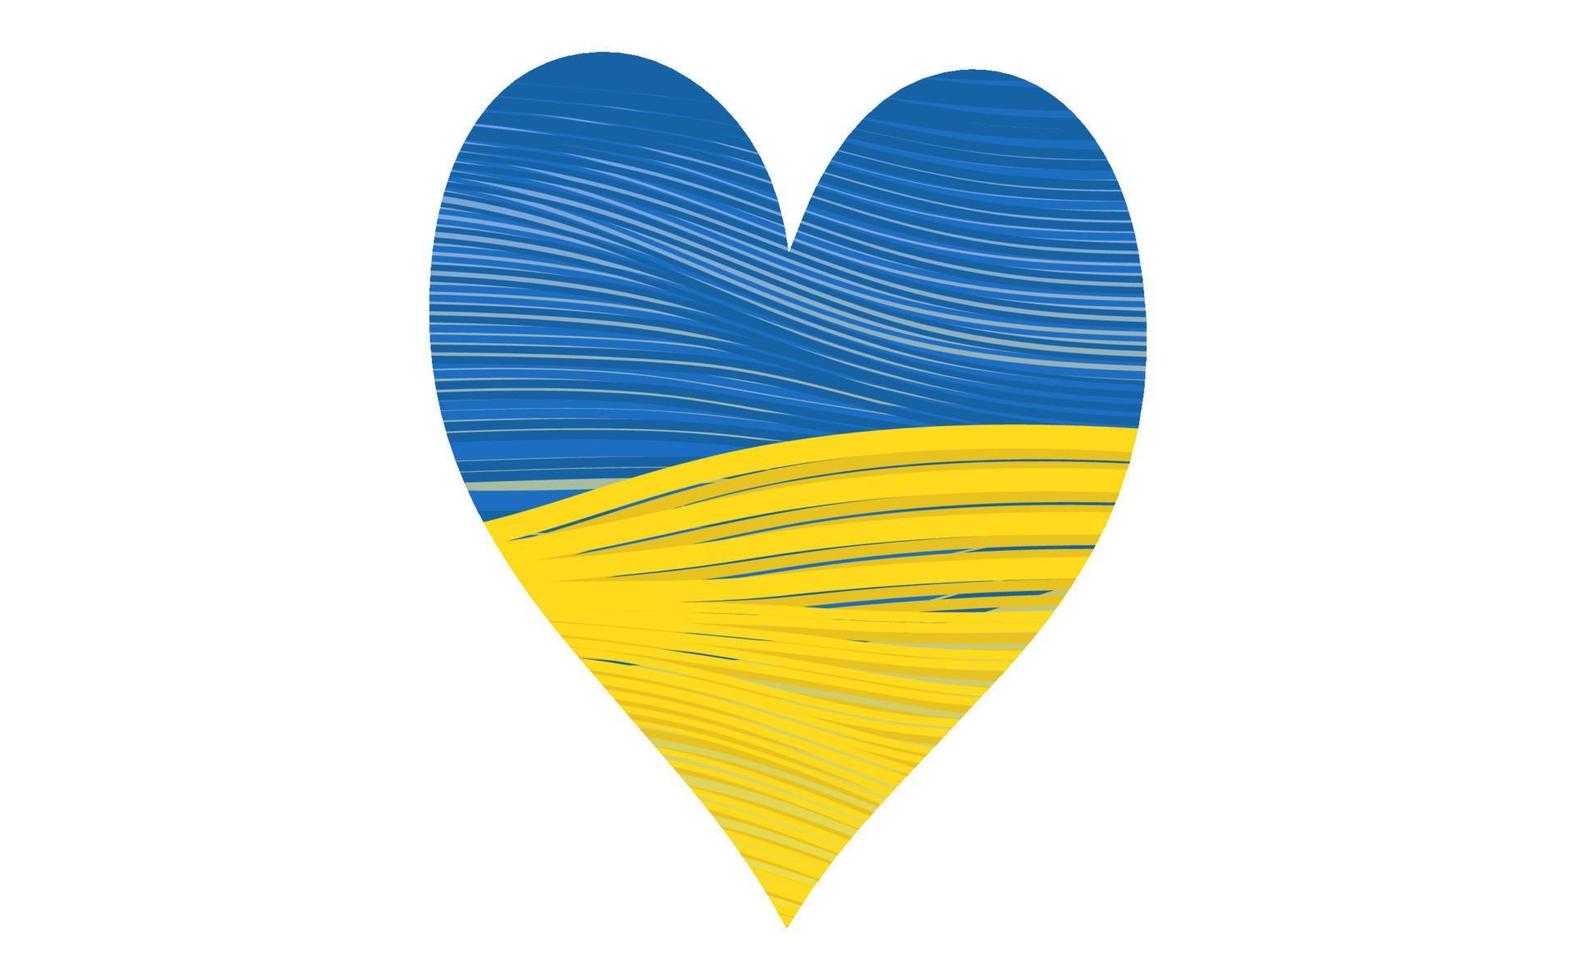 ukrainska flaggan, hjärtform ikon med färger på ukrainska flaggan. randigt mönster stil. symbol, affisch, fana krisen i Ukraina koncept. vektor isolerad på vit bakgrund